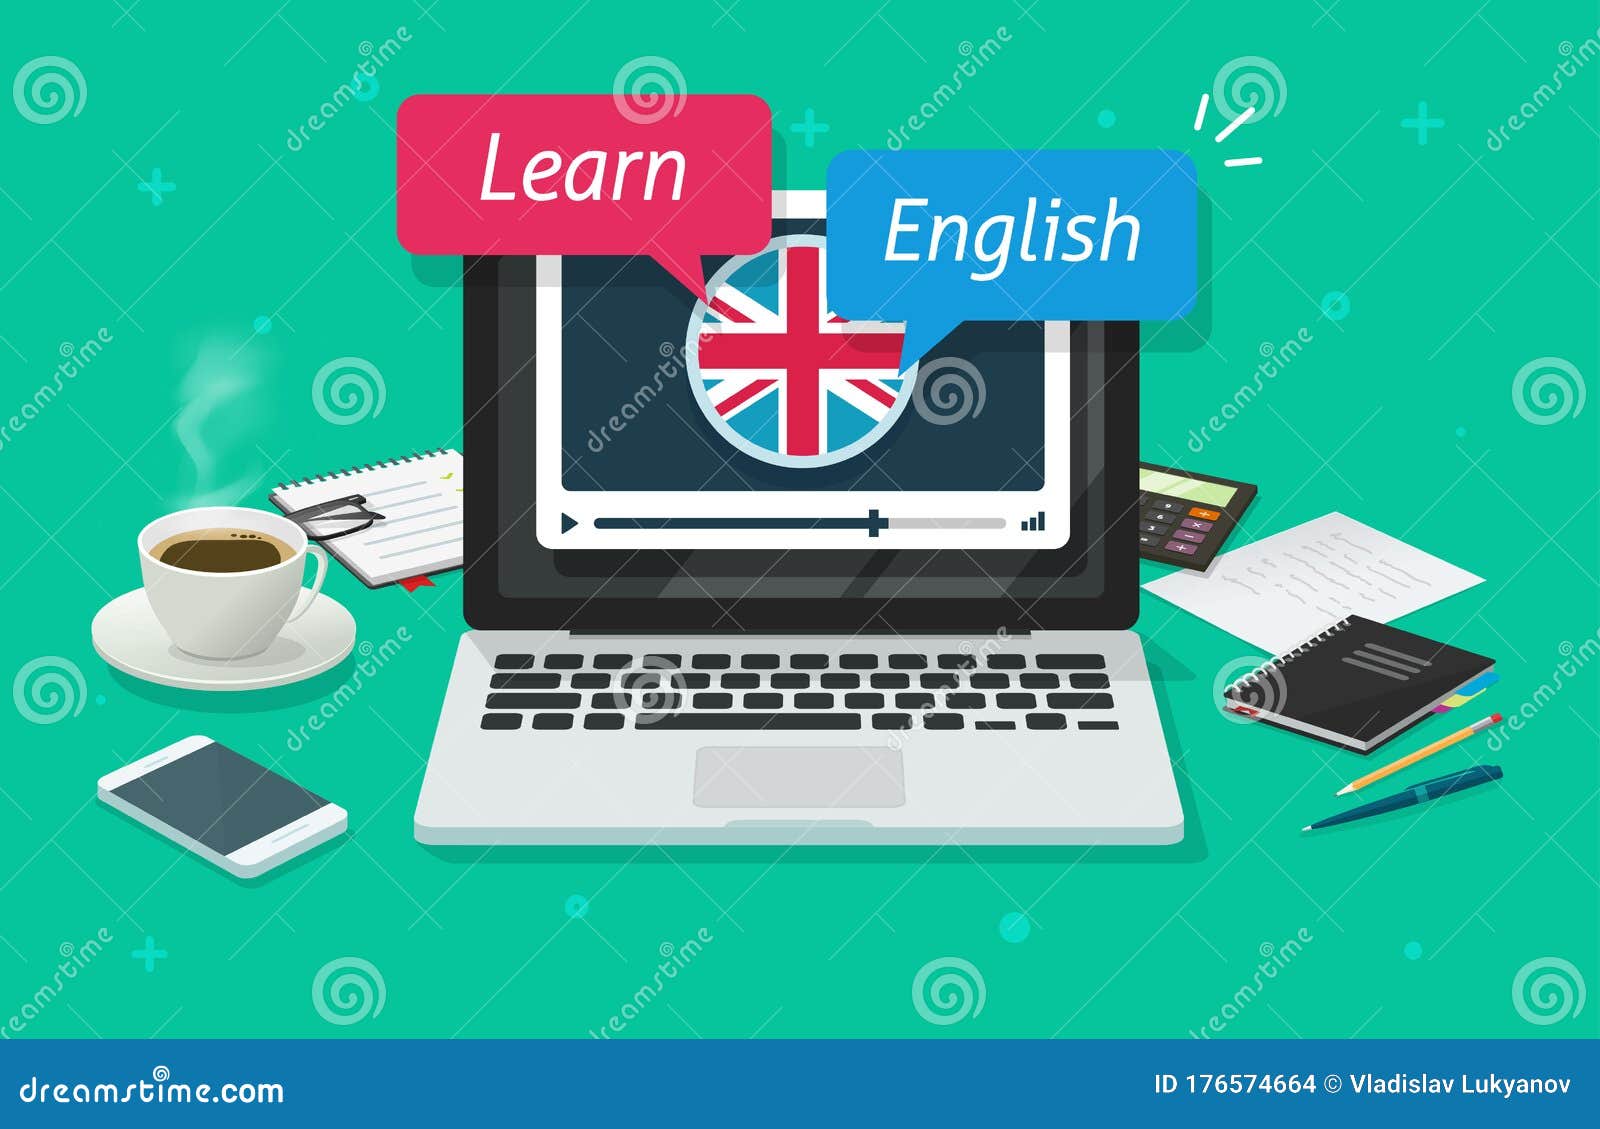 Aprenda Que Os Ingleses Escrevem No Caderno Foto de Stock - Imagem de  estudar, distância: 88511882